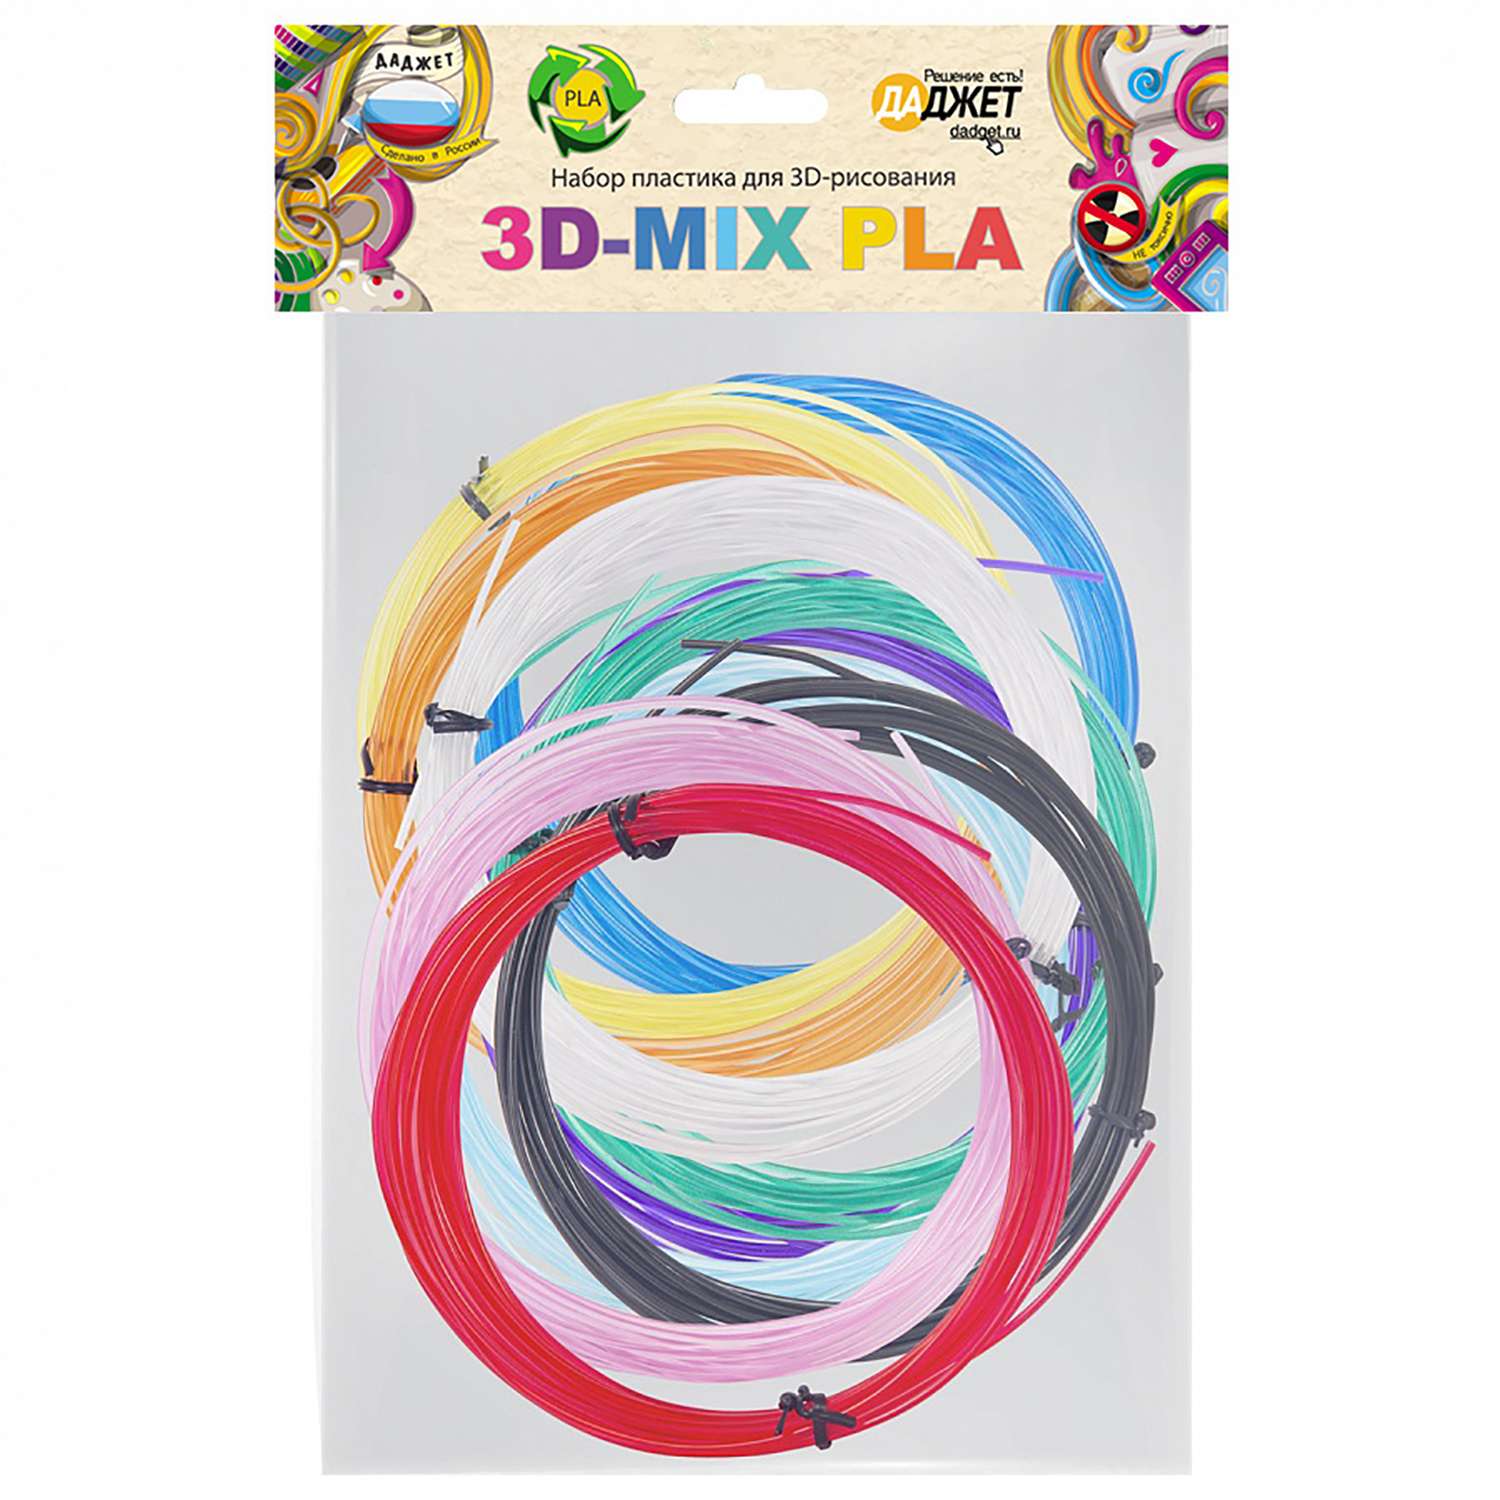 Набор пластика Даджет для 3D-рисования 3D-Mix PLA - фото 1